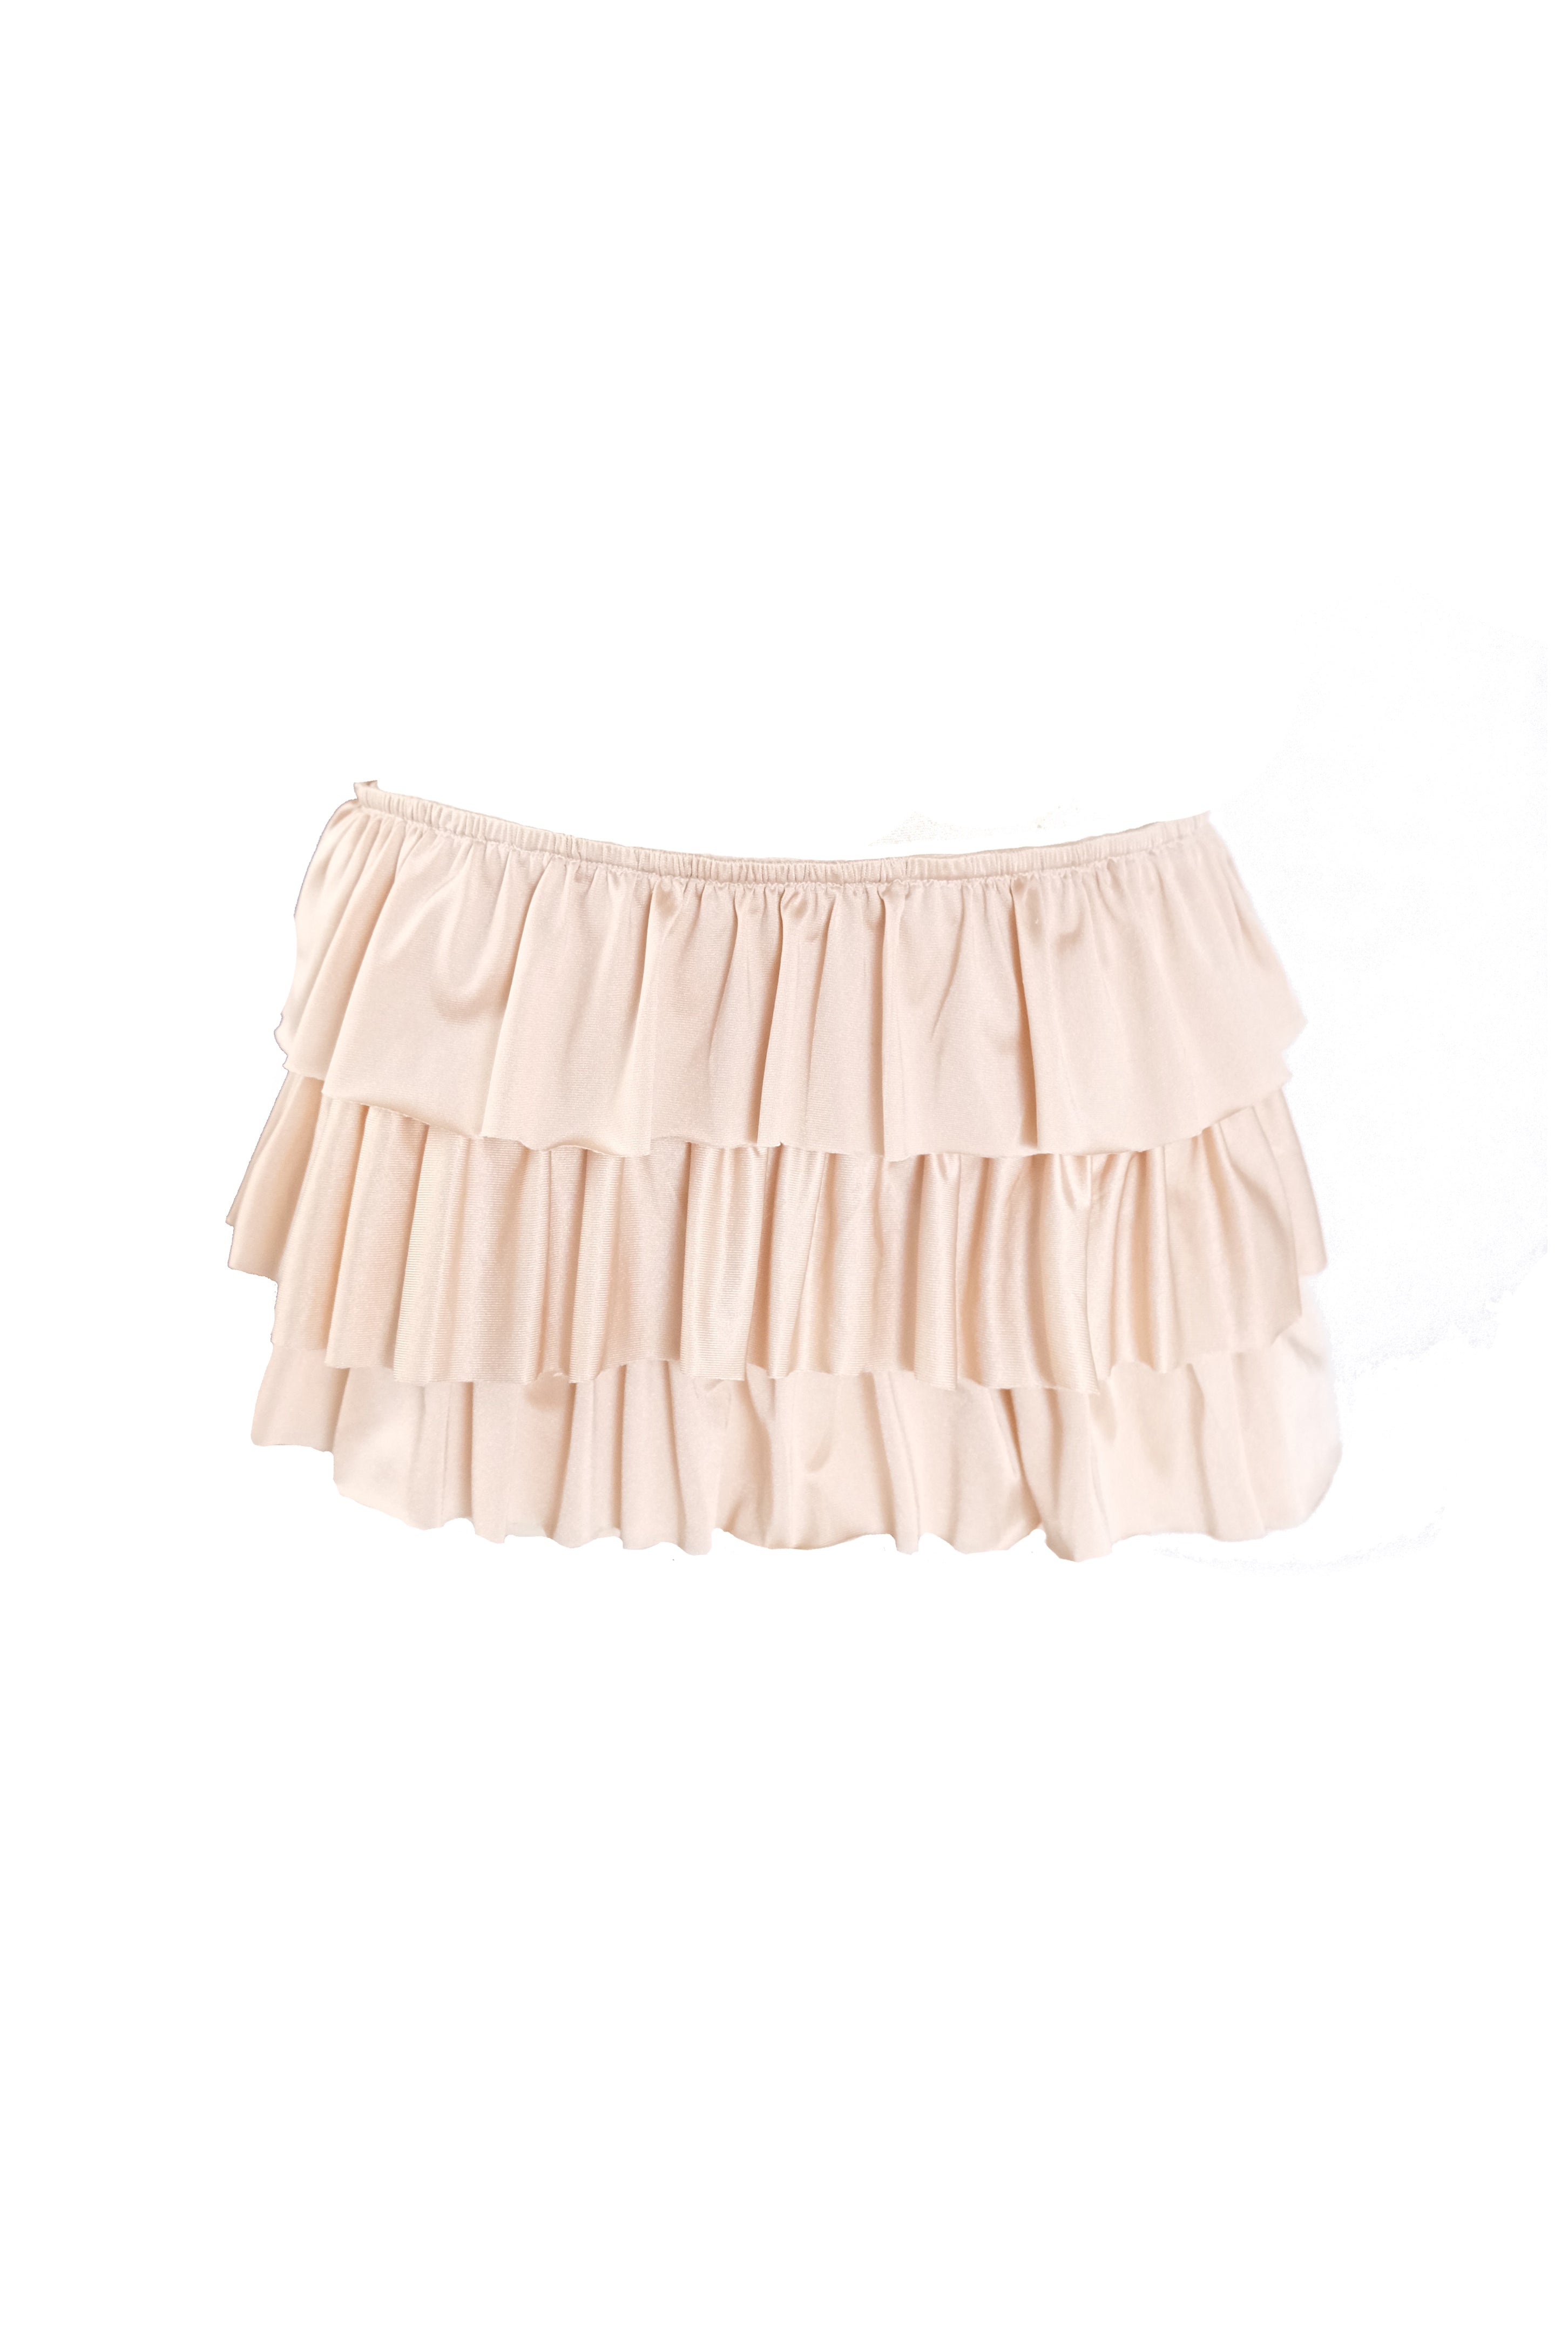 Caramel Ribbon Mini Skirt (XS-1X)